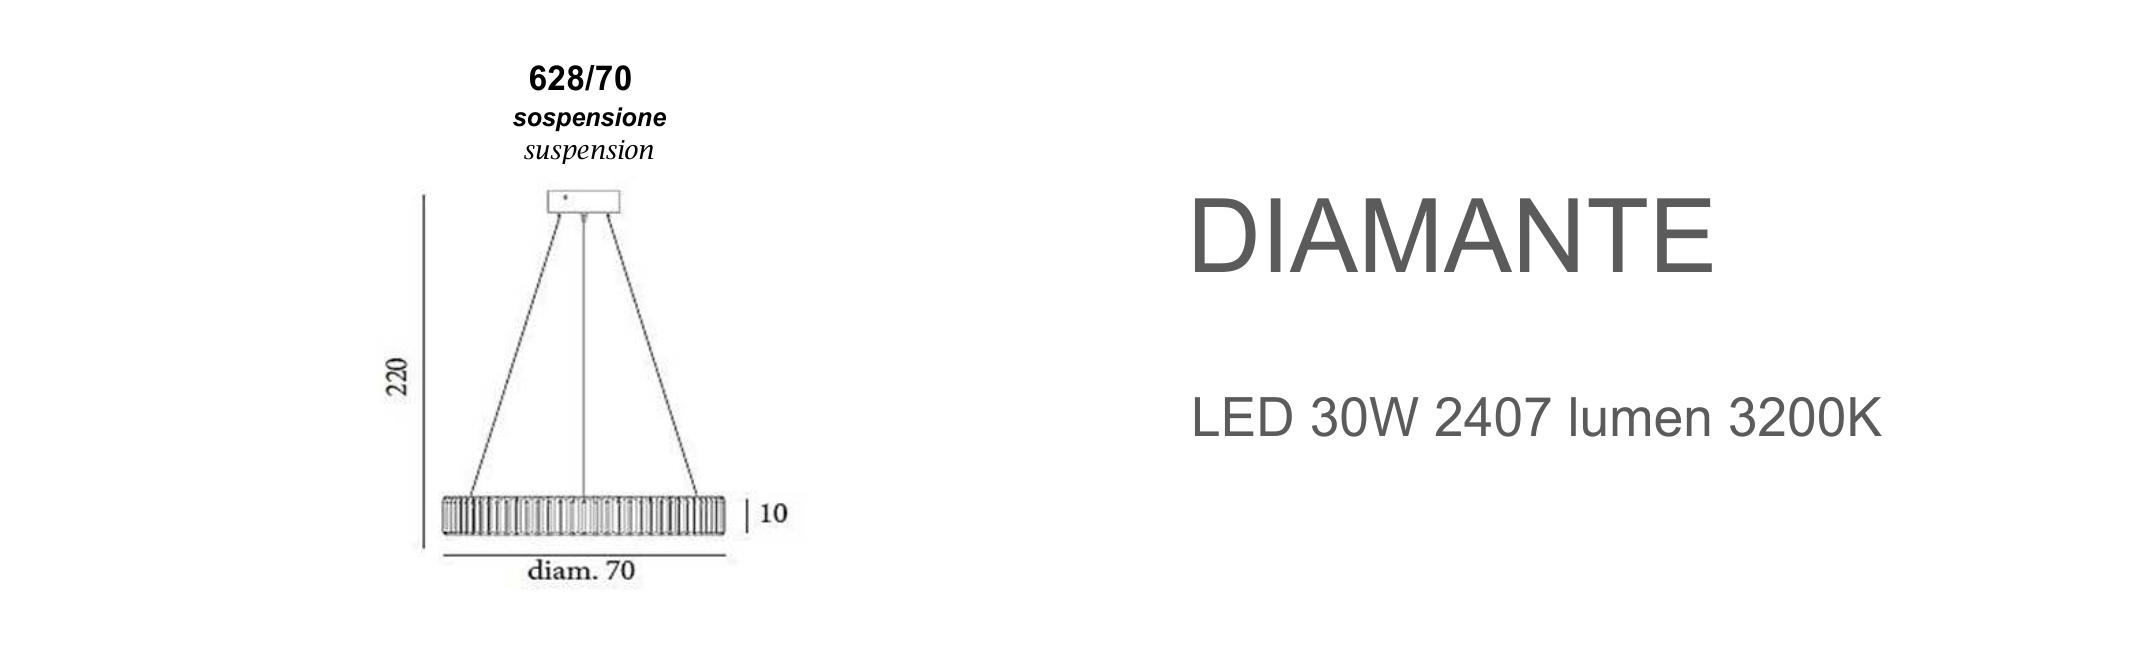 Diamante 628/70